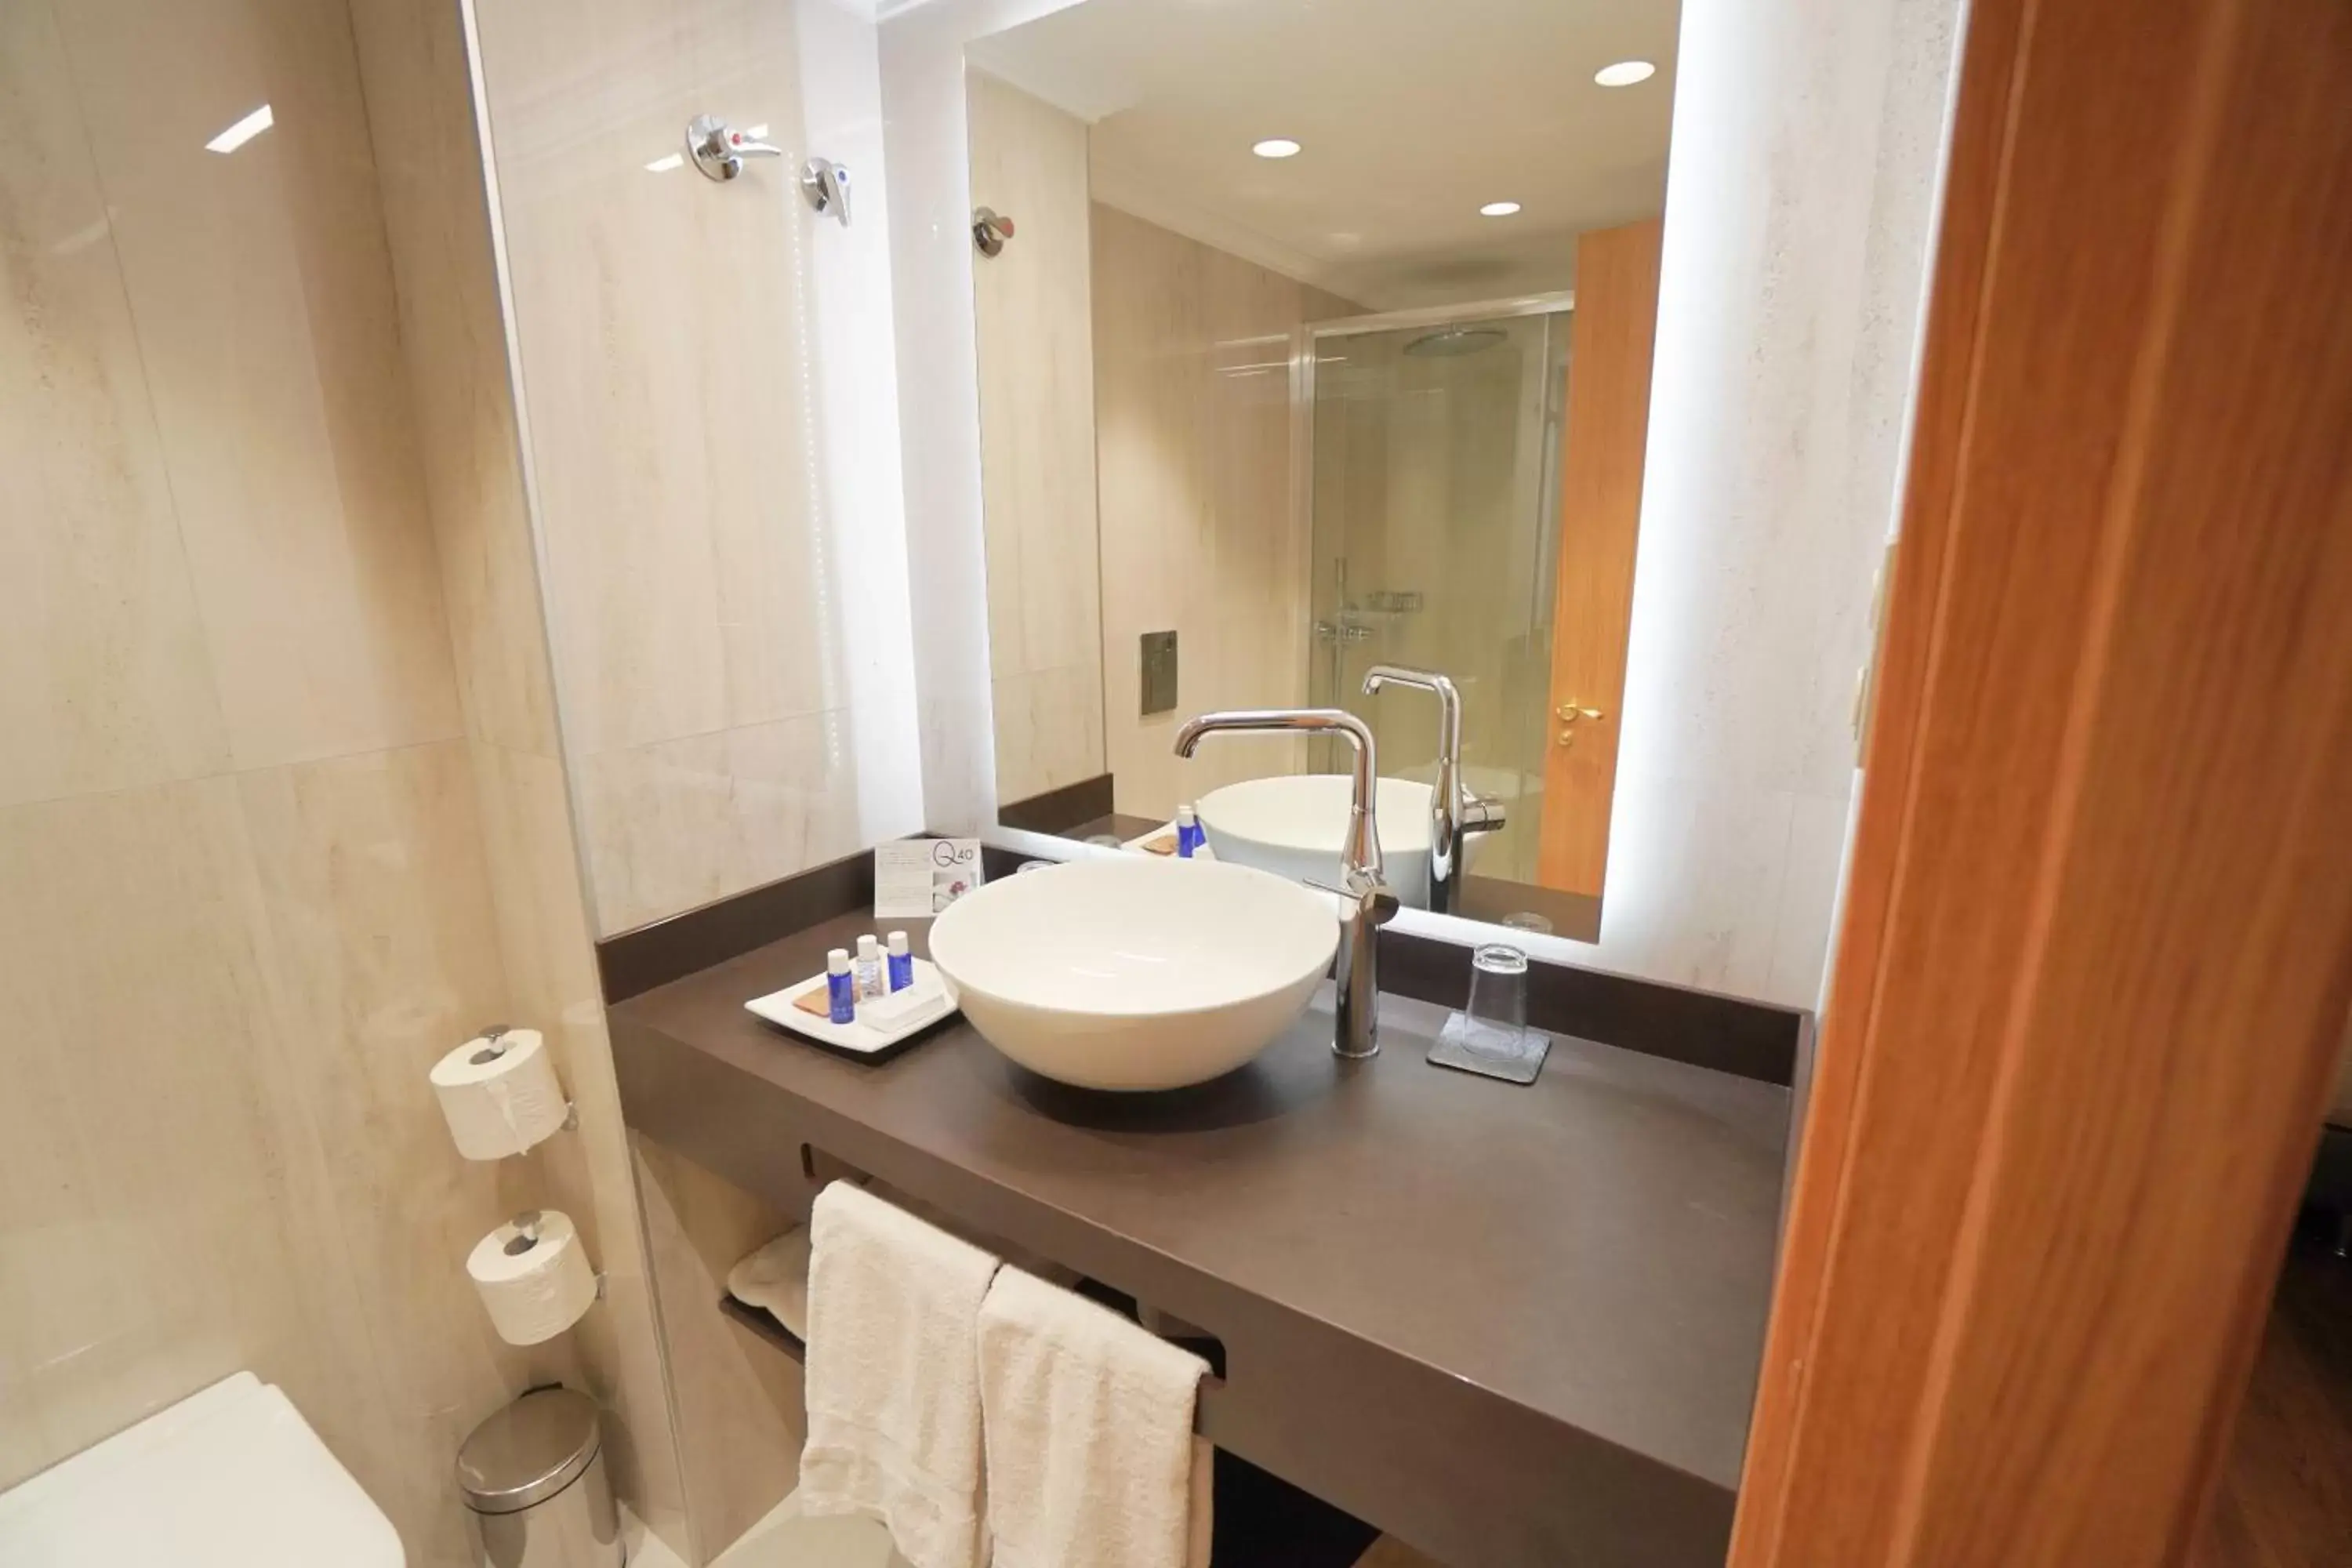 Property building, Bathroom in Aparto-Hotel Rosales